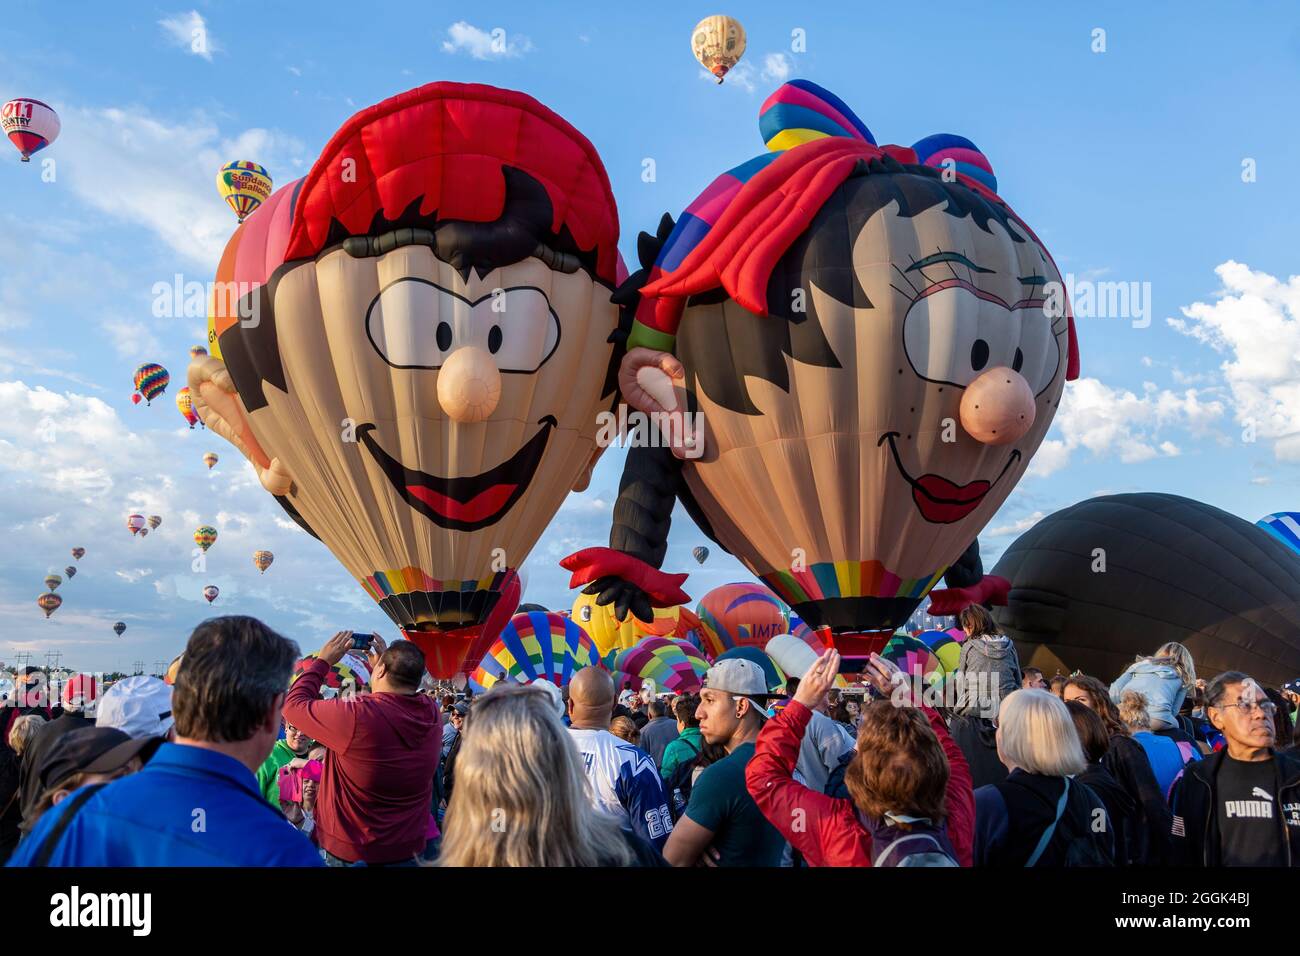 'Boy Balloon' (left) and 'Oons Wiefke' special shape hot air balloons and crowd, Albuquerque International Balloon Fiesta, Albuquerque, New Mexico USA Stock Photo